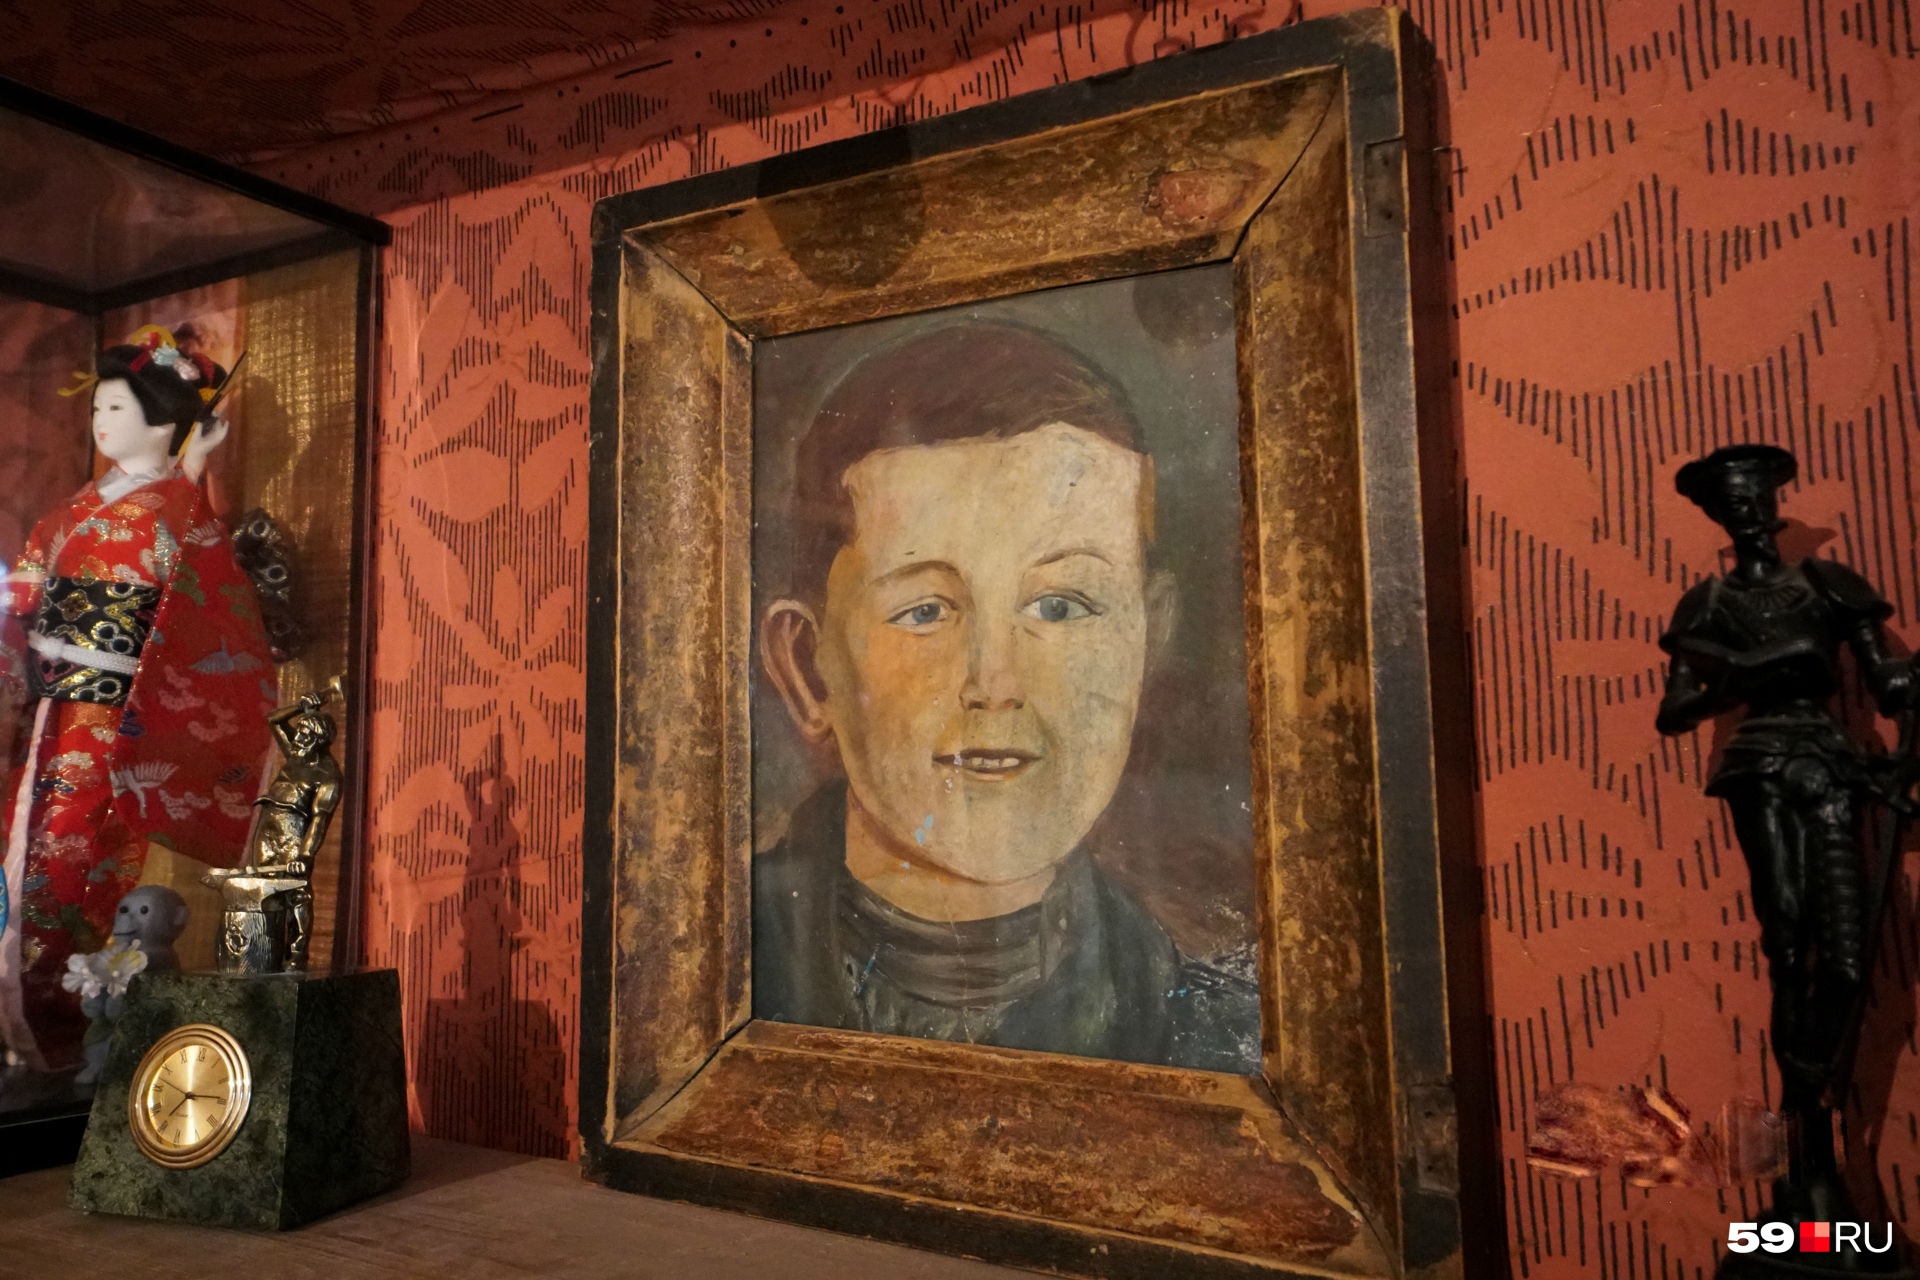 Детский портрет Кости написал красками в довоенные годы односельчанин и старший товарищ Собакина. Он погиб на войне 